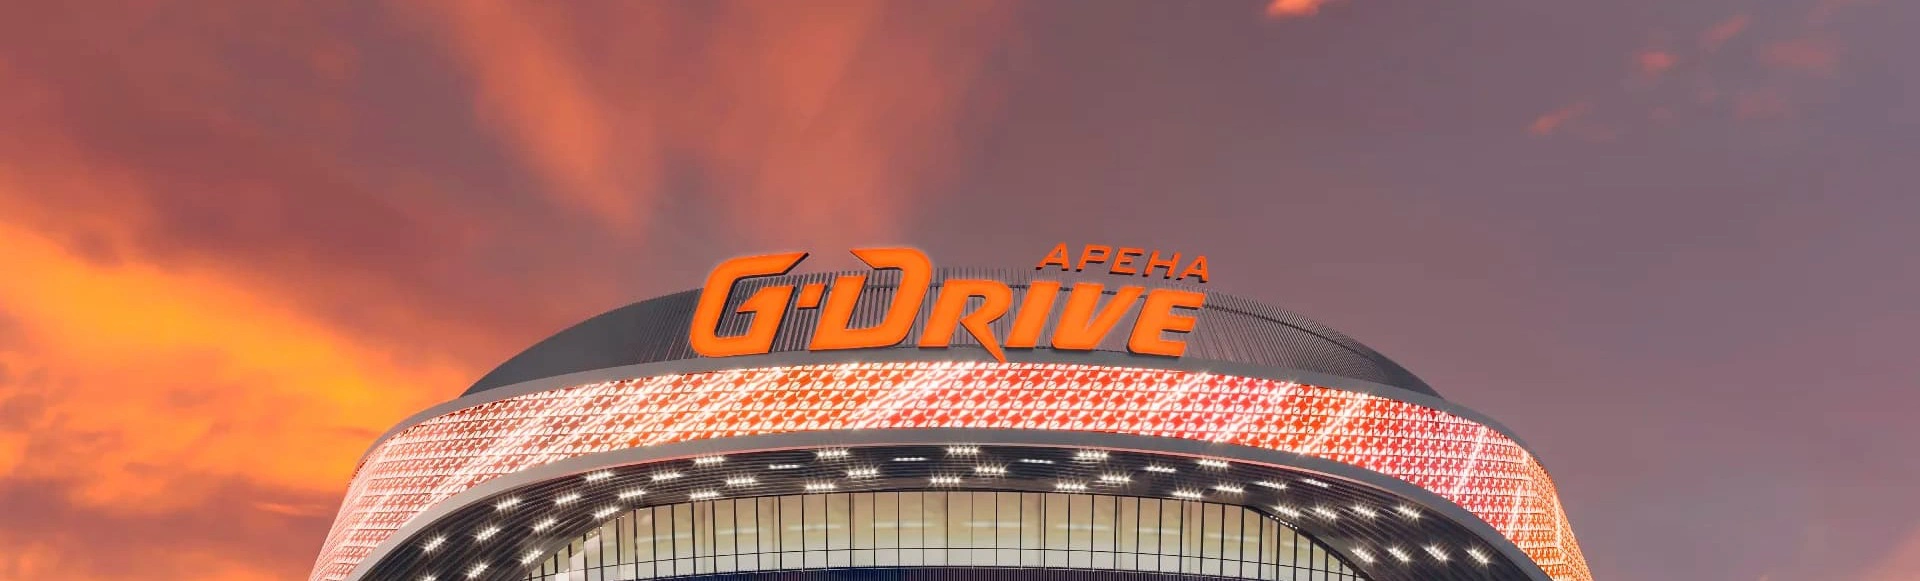 G-Drive Арена – самая посещаемая арена Континентальной хоккейной лиги в этом сезоне
